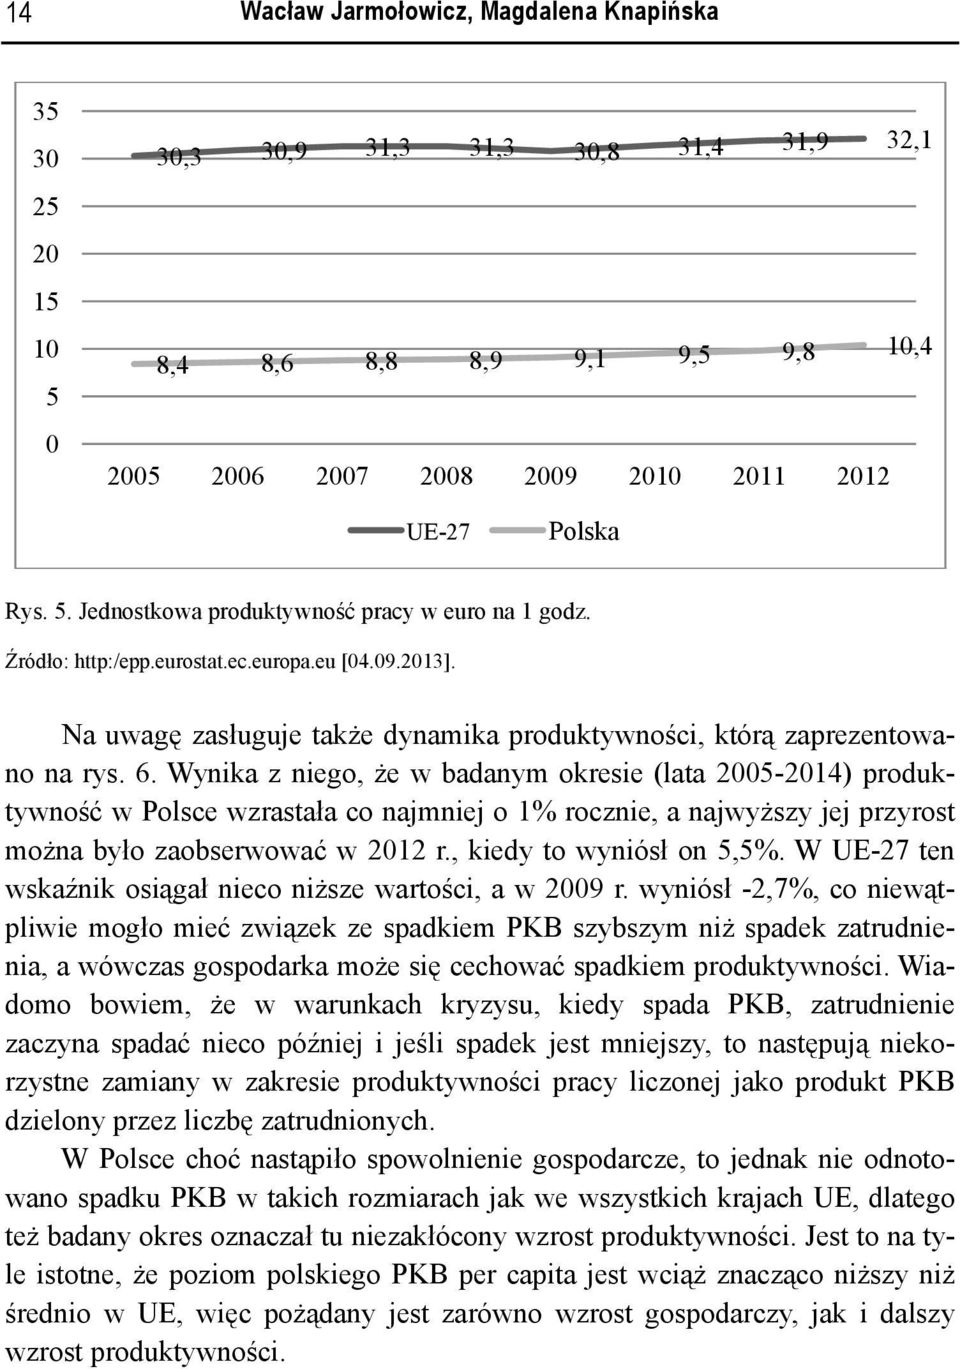 Wynika z niego, że w badanym okresie (lata 25-214) produktywność w Polsce wzrastała co najmniej o 1% rocznie, a najwyższy jej przyrost można było zaobserwować w 212 r., kiedy to wyniósł on 5,5%.